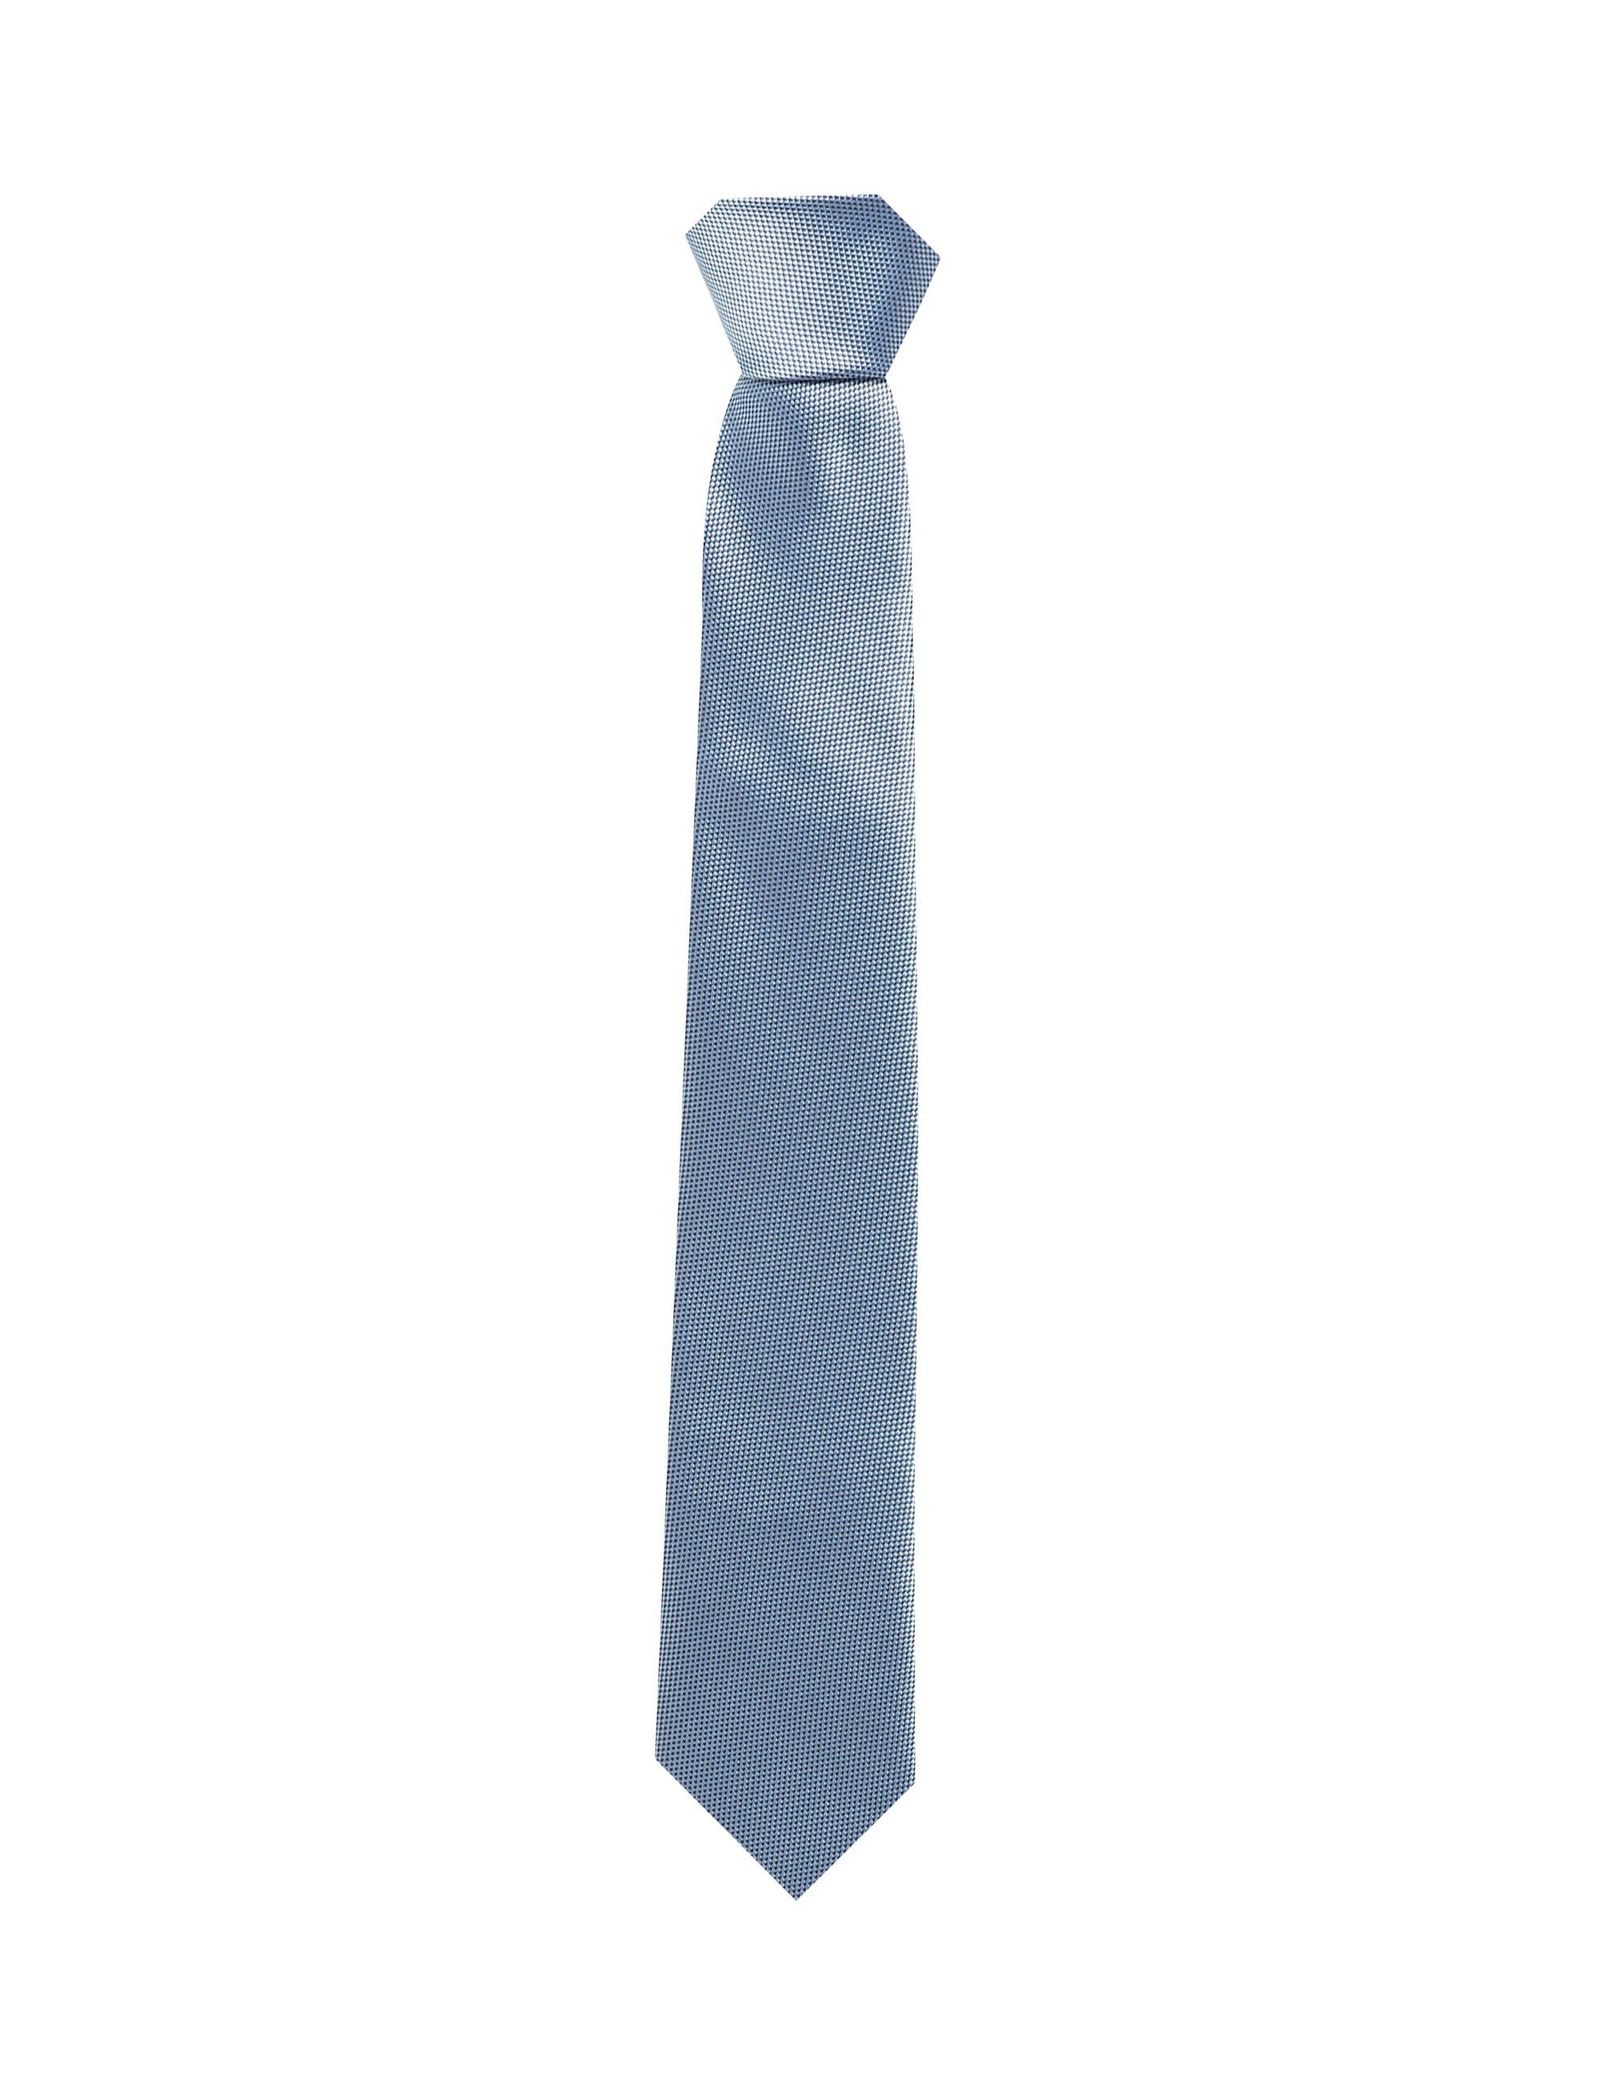 کراوات طرح دار مردانه - رد هرینگ - آبي روشن - 1